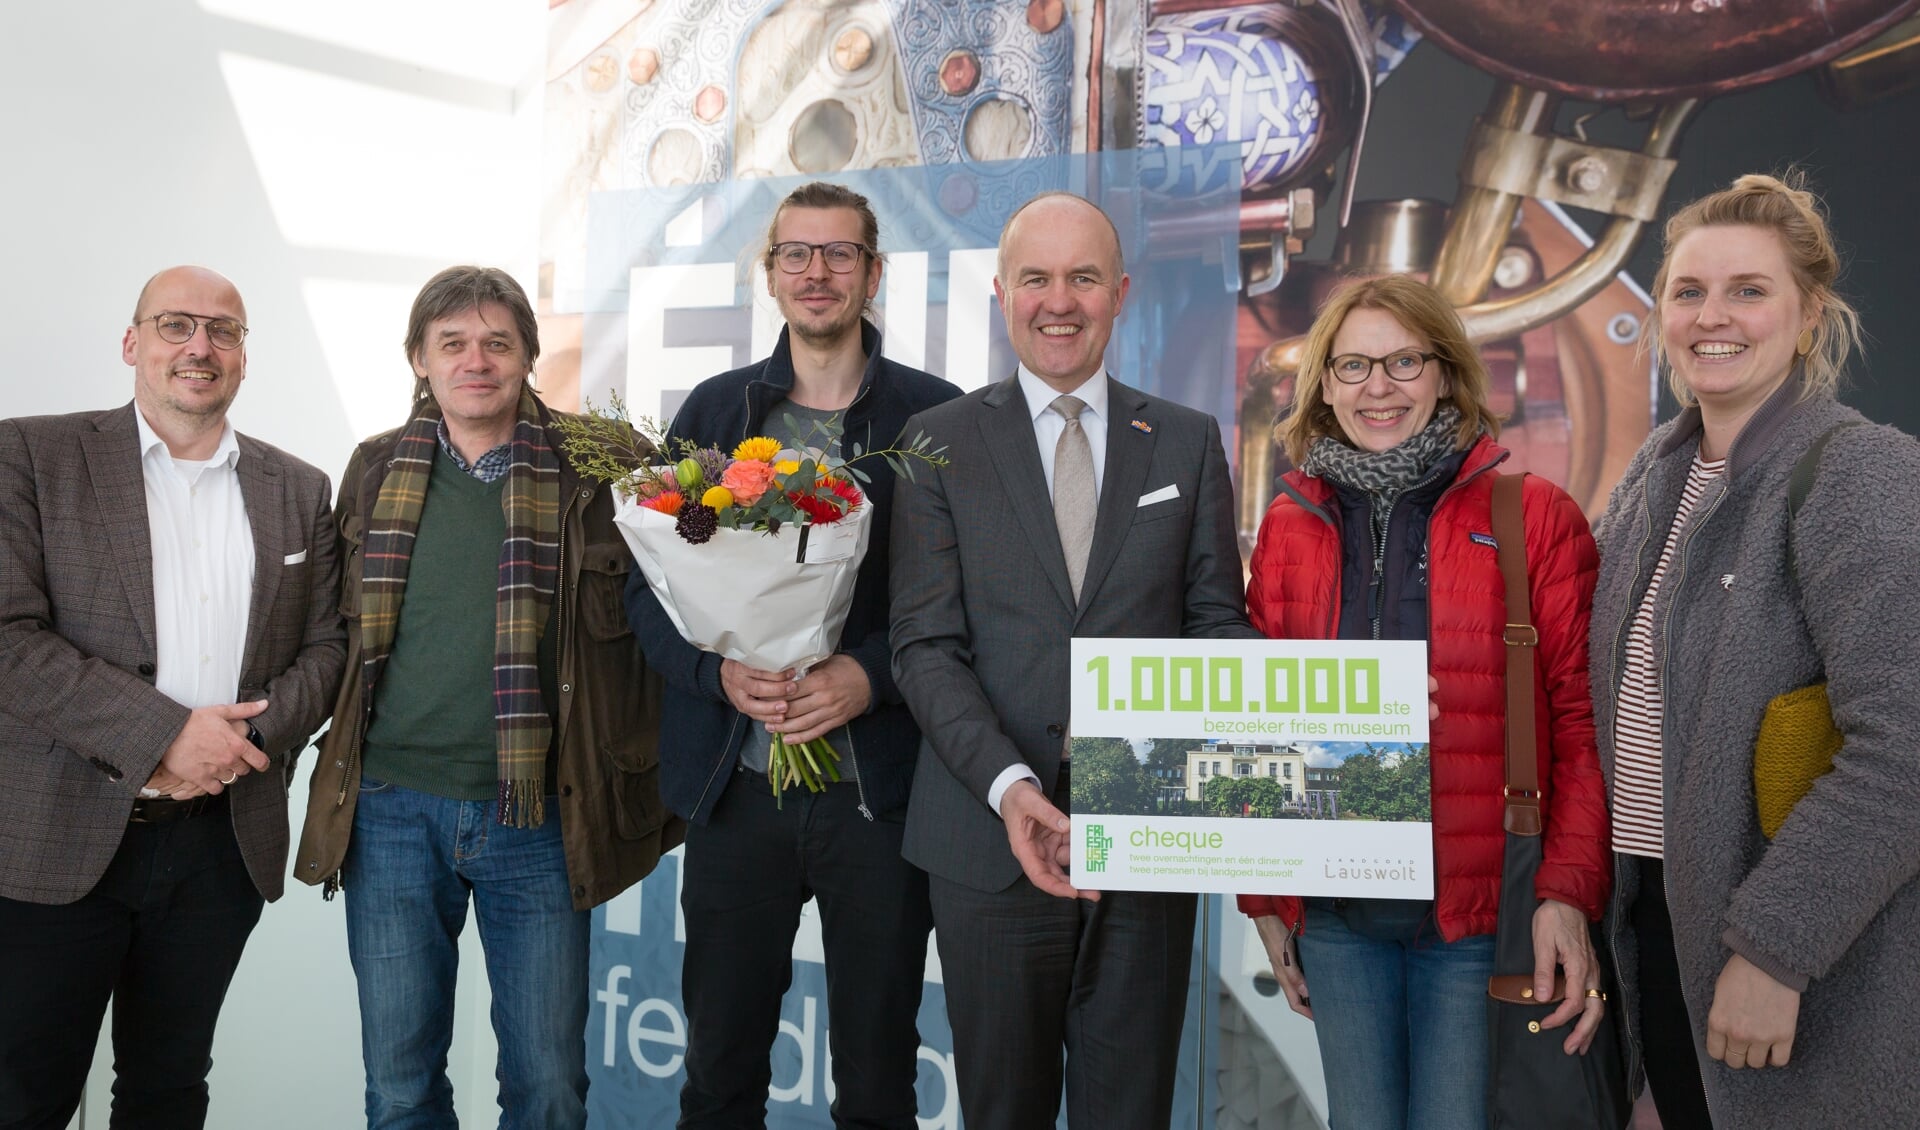 Museumdirecteur Kris Callens en de Commissaris van de Koning in Friesland Arno Brok verwelkomen de familie Effing als miljoenste bezoeker.